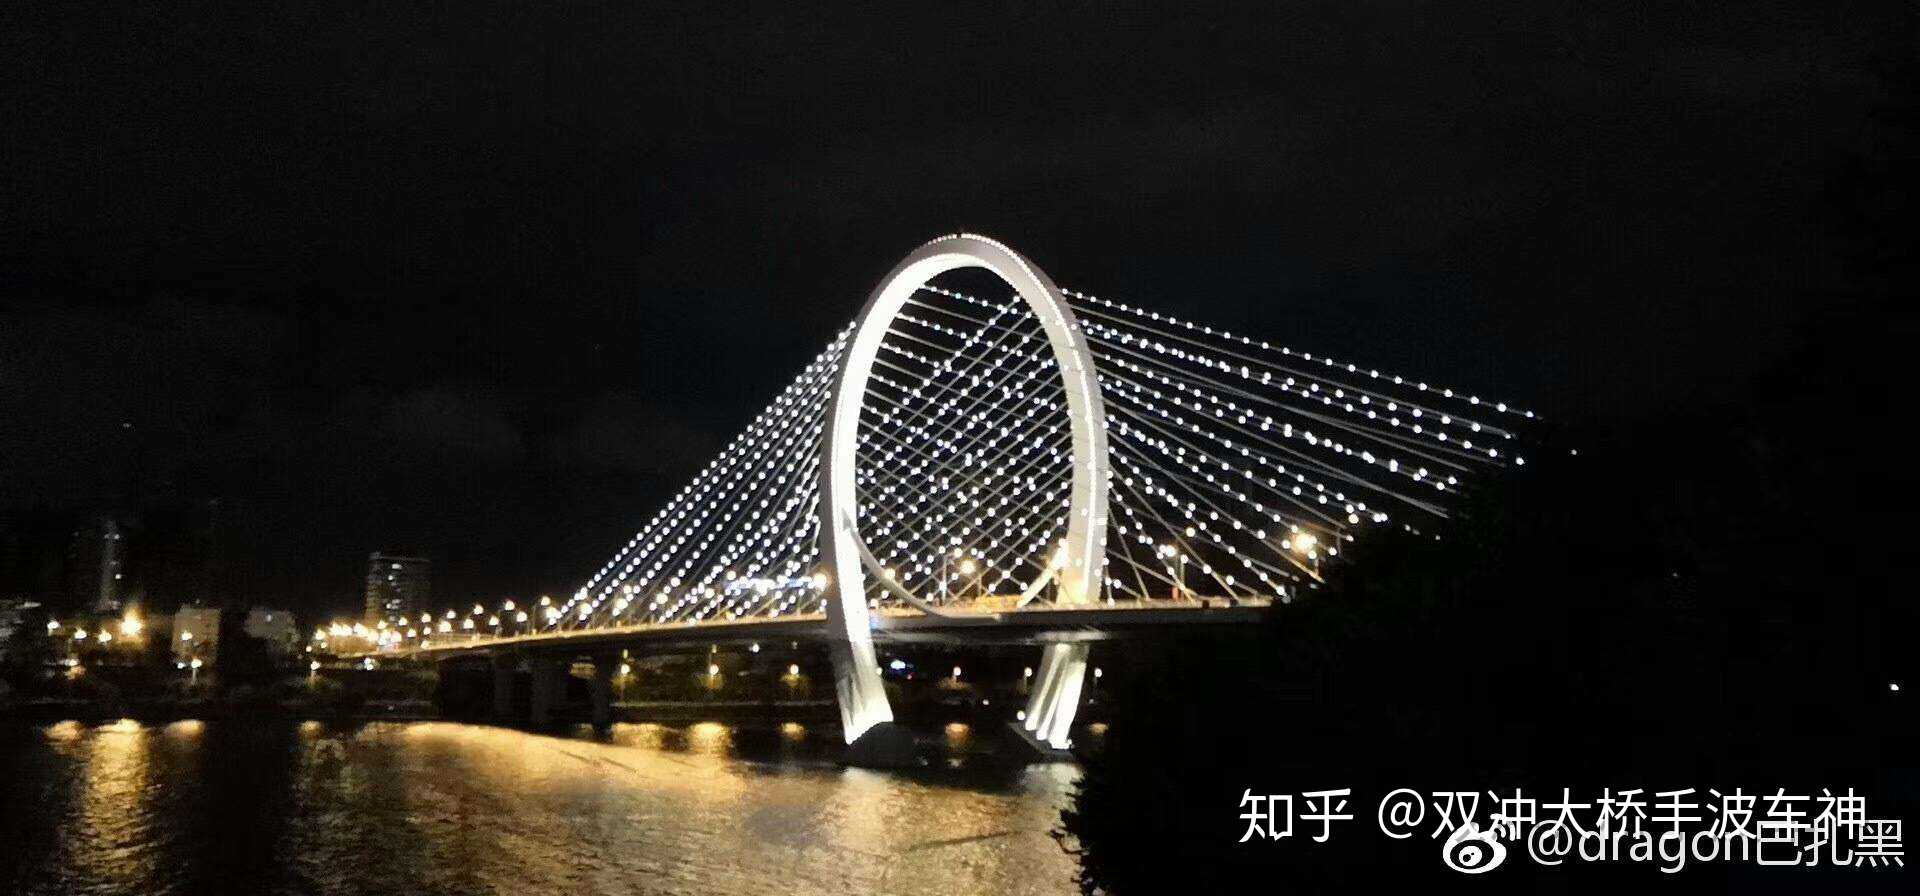 双冲大桥手波车神 的想法: 28日柳州白沙大桥正式通车,我今晚十点去